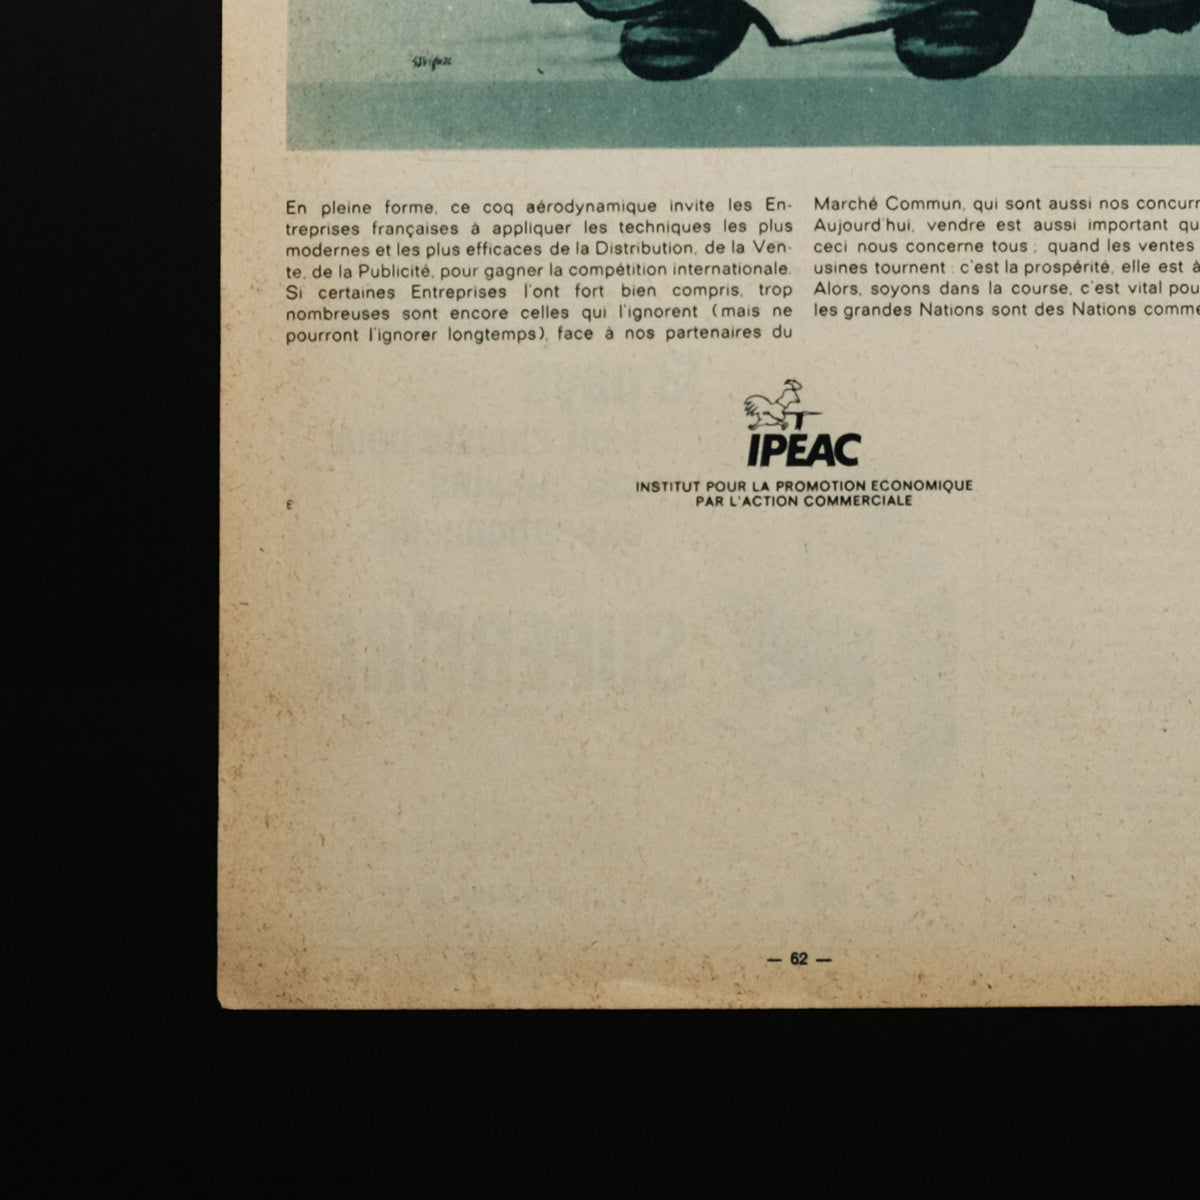 「古くに描かれた絵図展」フランス ヴィンテージ広告 / レイモン・サヴィニャック